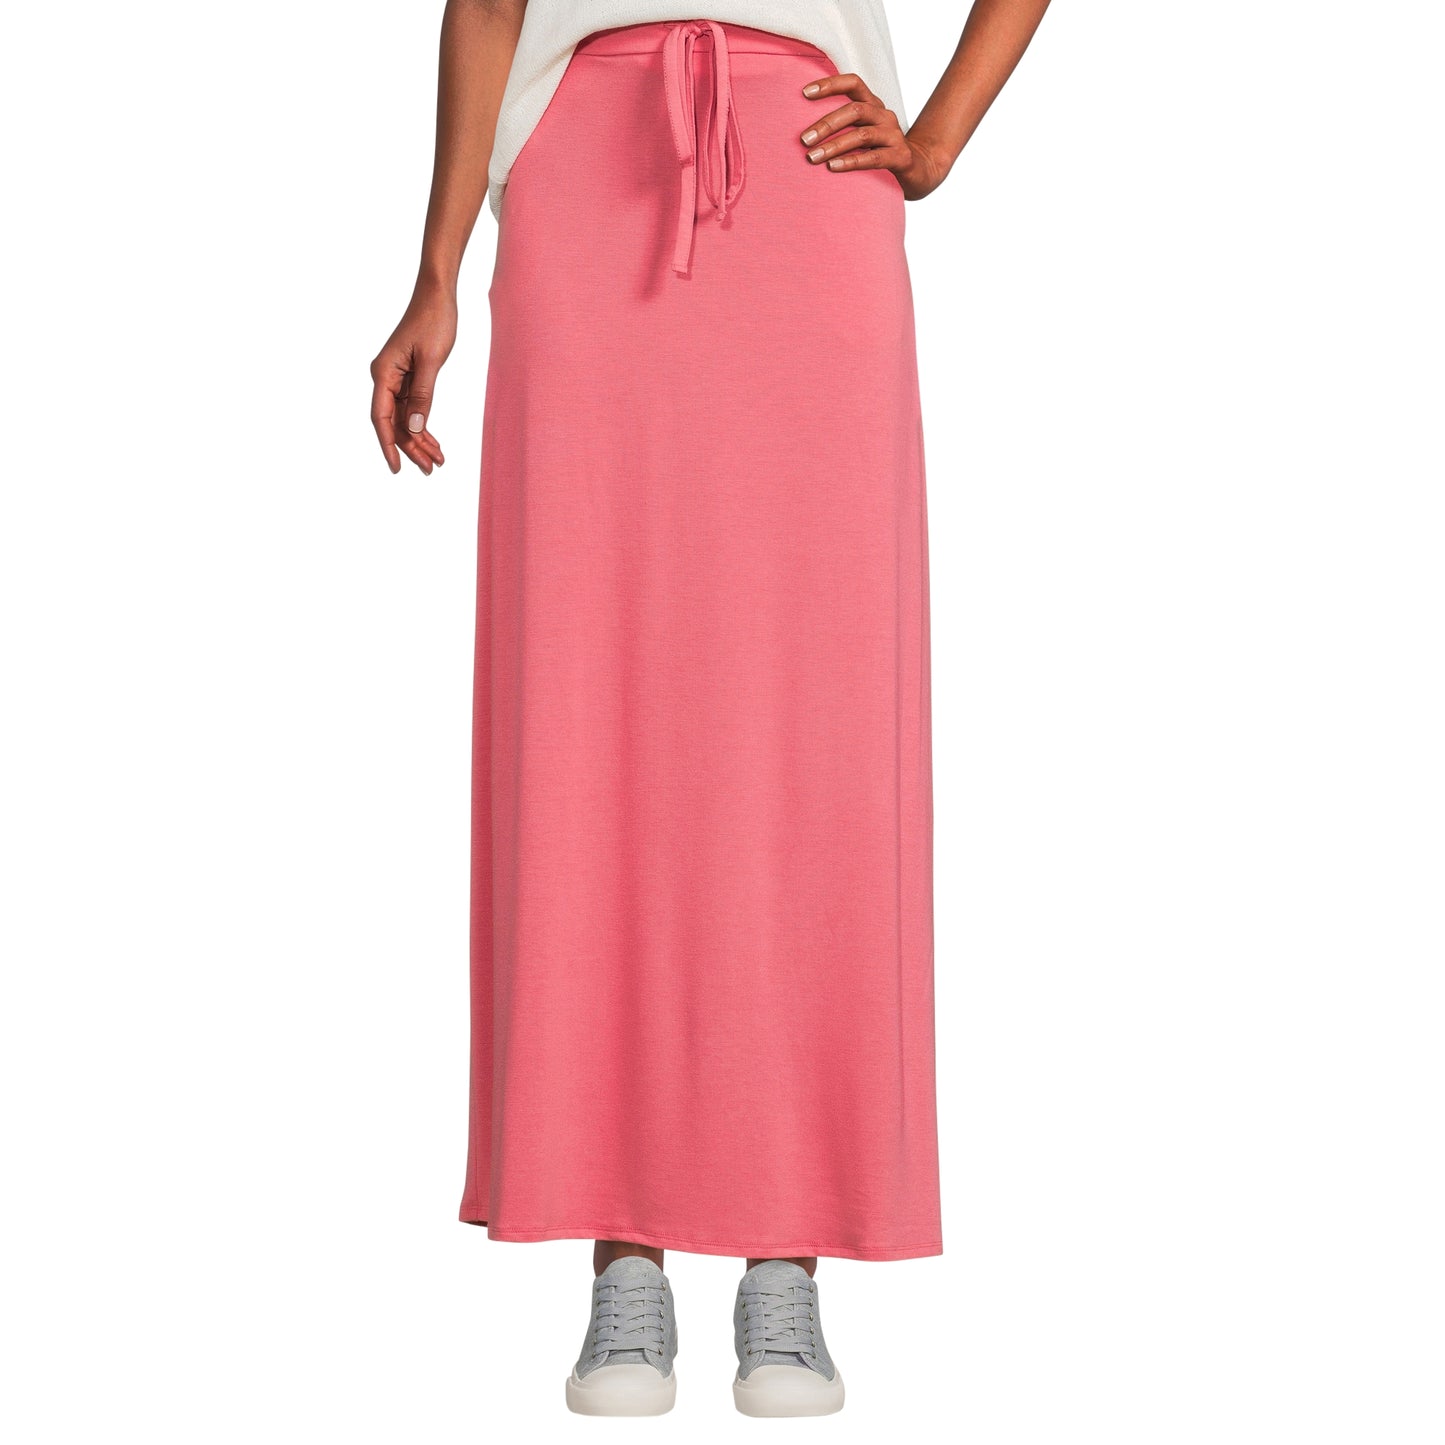 Women's Maxi Long Skirt Drawstring Waist Pockets Soft Comfort Fabric Red